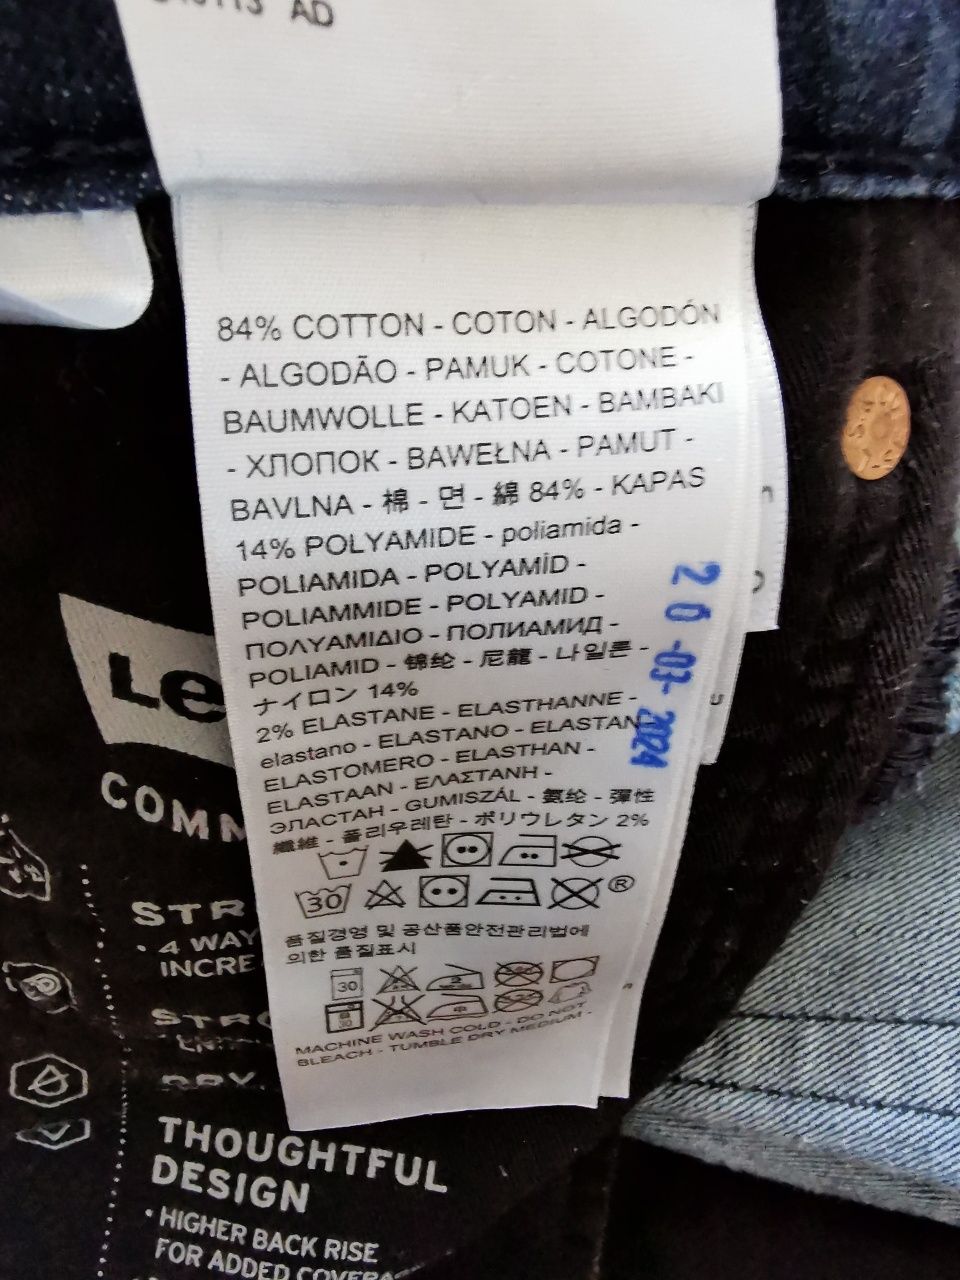 Levi's 511 Commuter Cordura W36 L32 spodnie jeansowe jeansy Levis